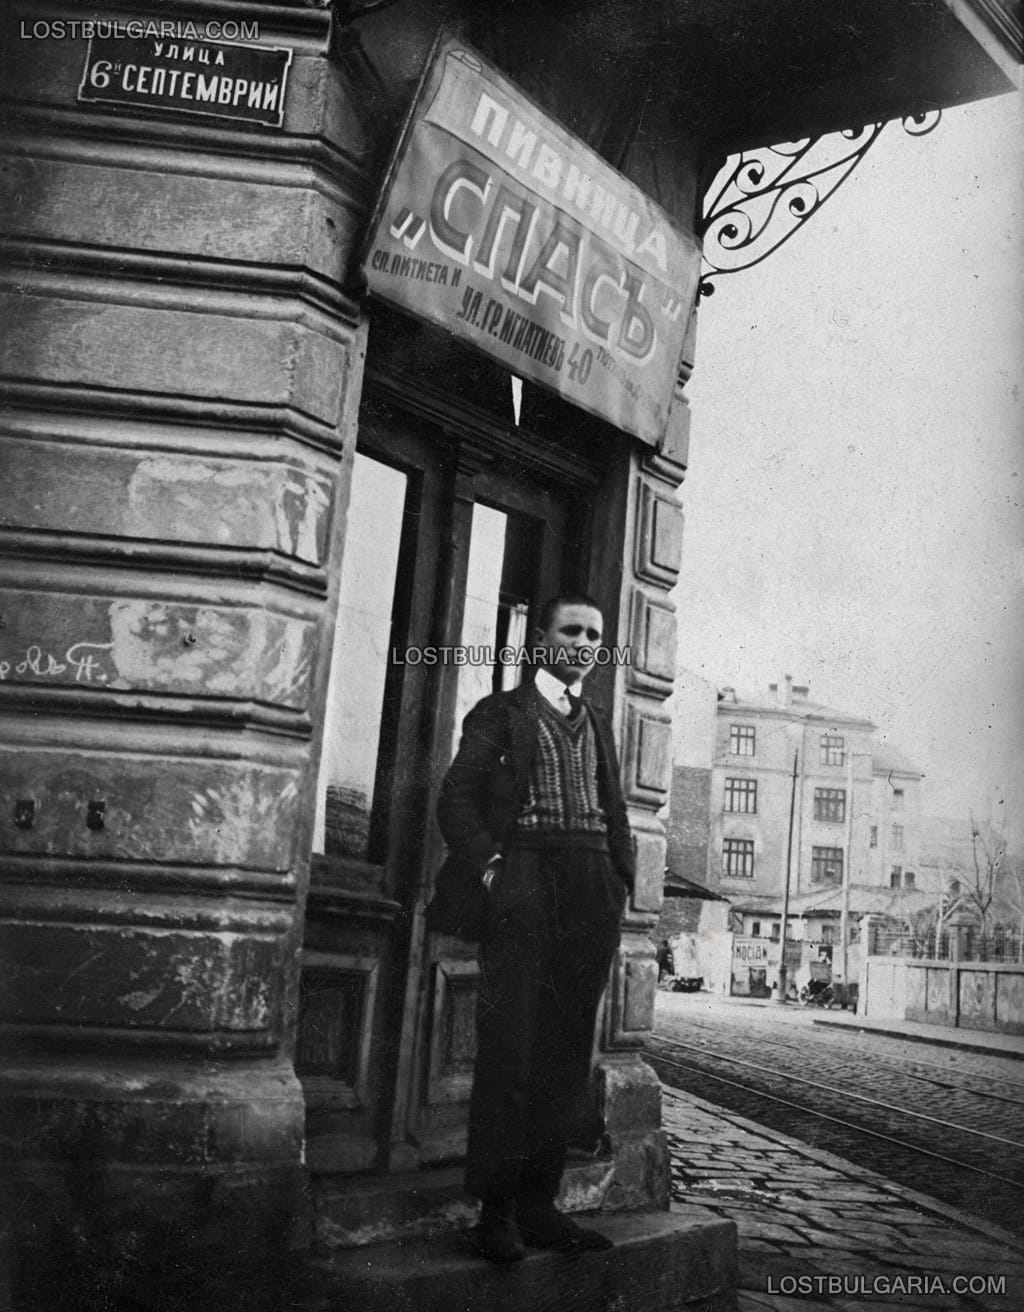 Млад мъж пред входа на пивница "Спас" на ъгъла на улиците "6-ти септемврий" и "Граф Игнатиев", София, 20-те години на ХХ век